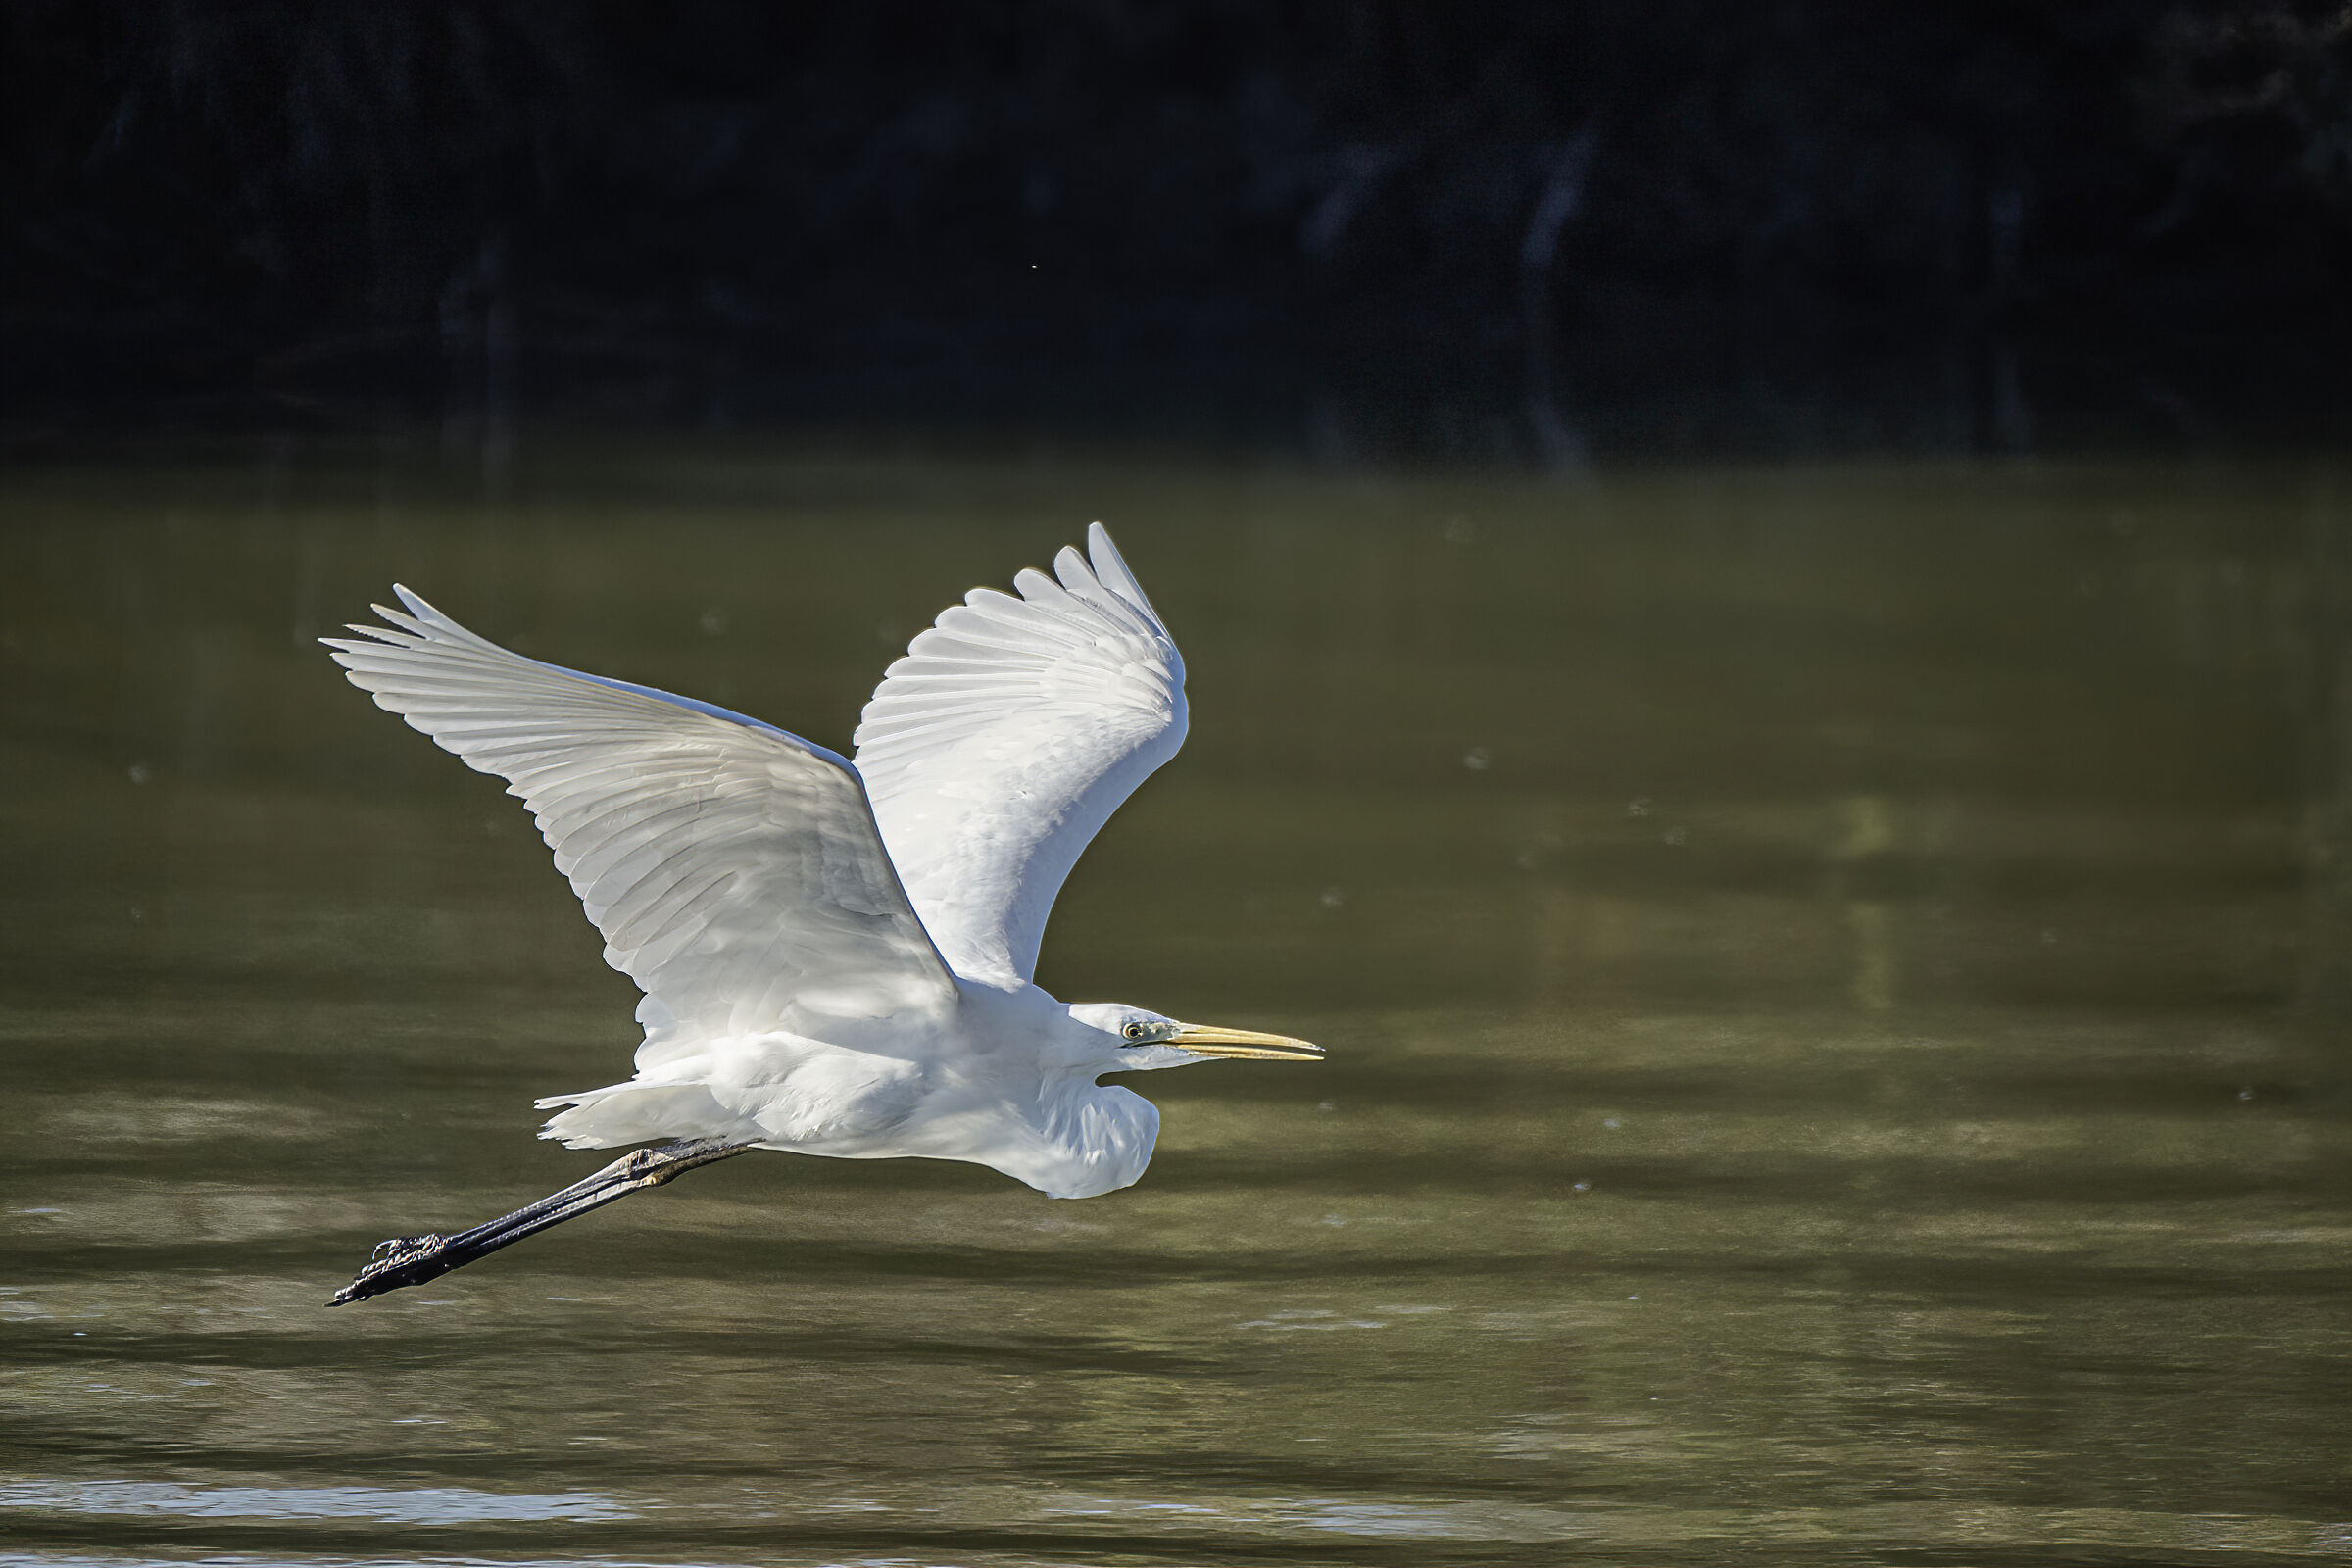 Egretta egrets in flight...